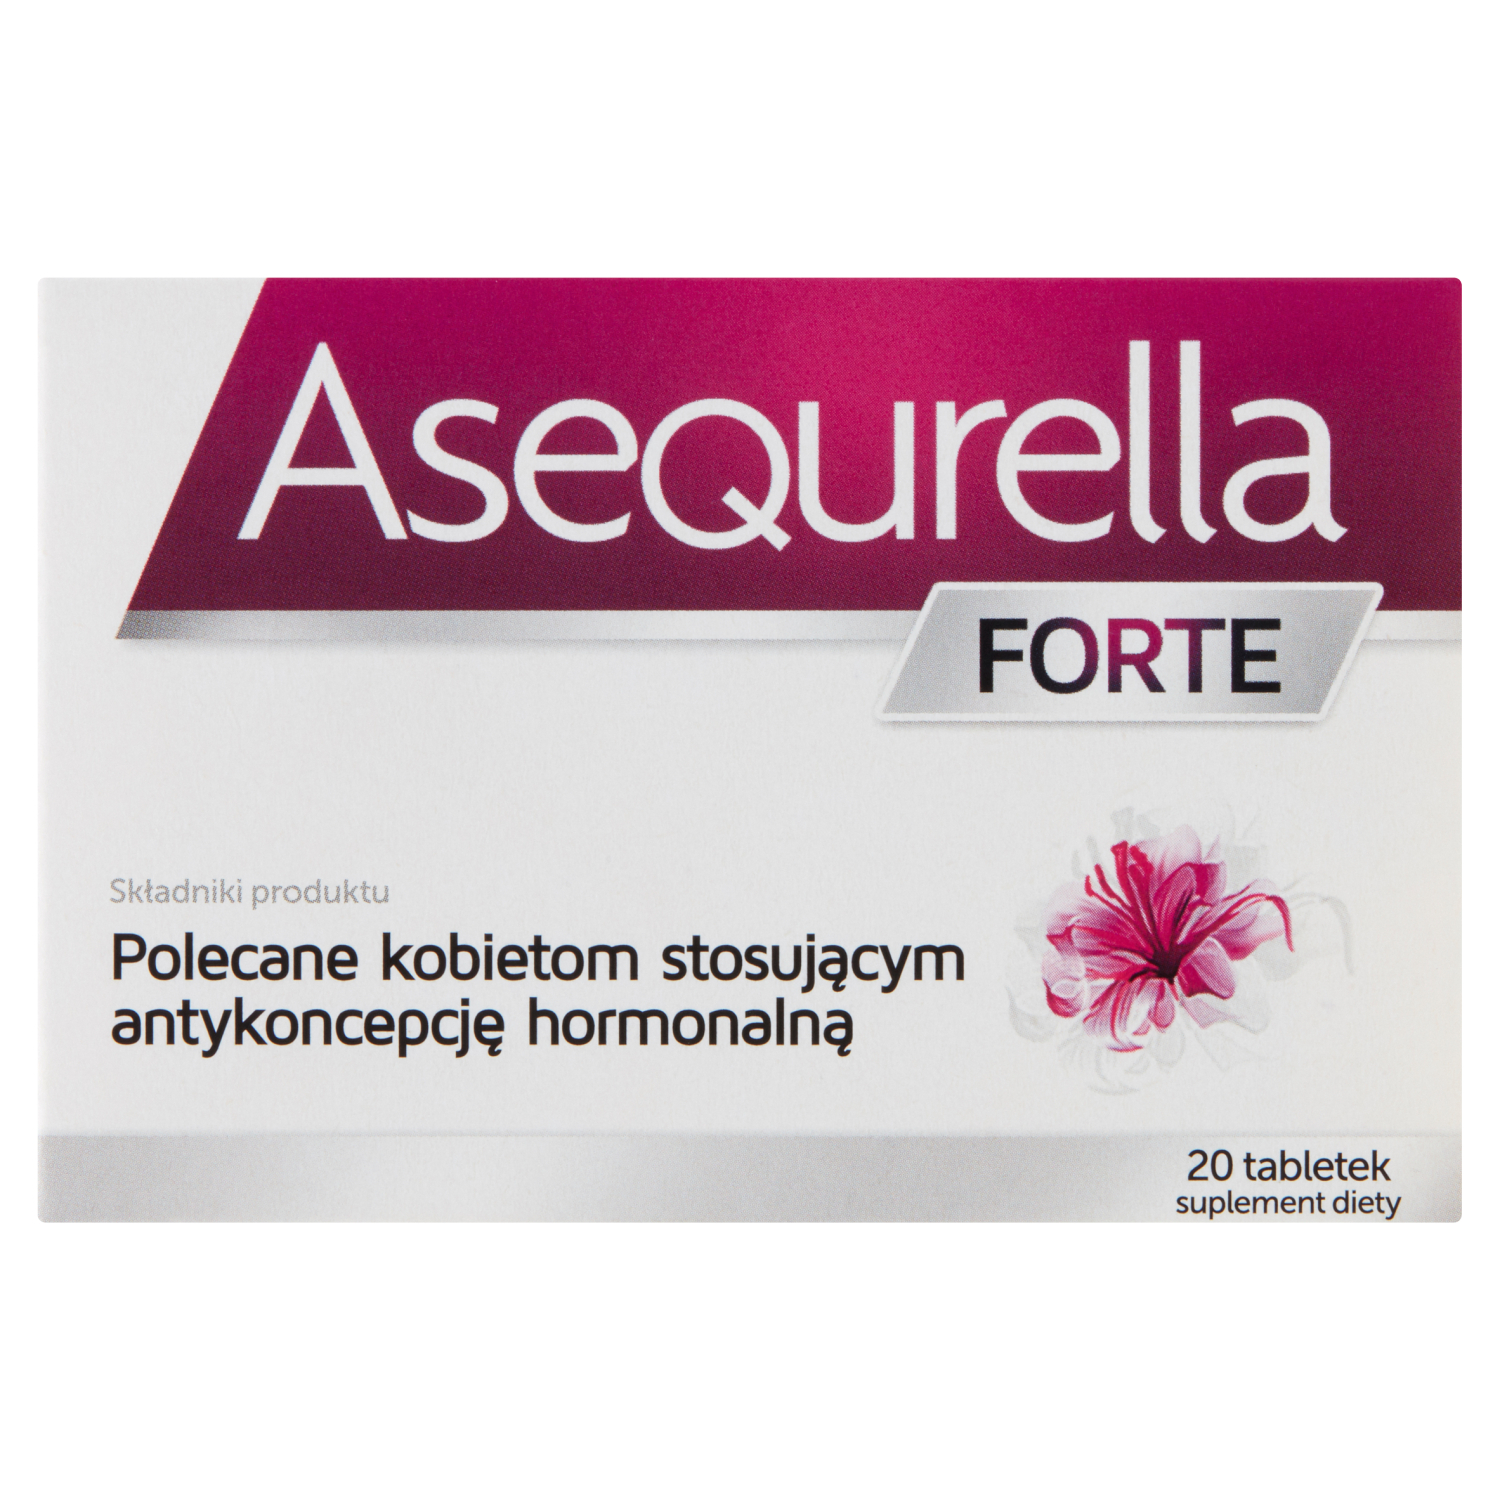 Asequrella Forte биологически активная добавка, 20 таблеток/1 упаковка биологически активная добавка vitamin c forte real pharm 90 таблеток антиоксидант для иммунитета кожи лица для мужчин и женщин